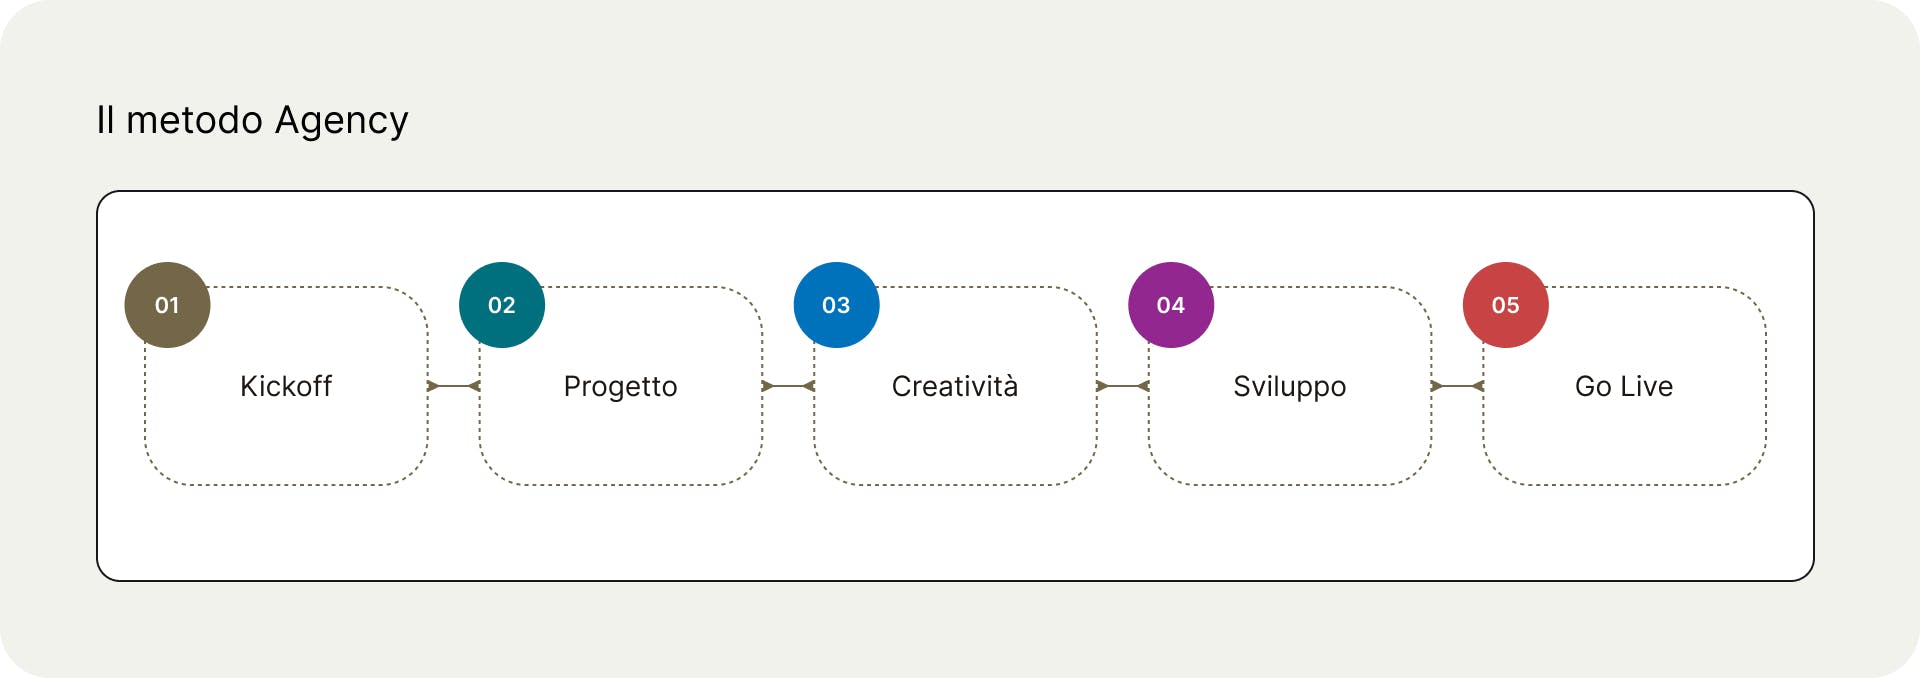 Le cinque fasi del lavoro per l'Ordine degli Architetti di Firenze: Kickoff; Progetto; Creatività; Sviluppo; Go Live.